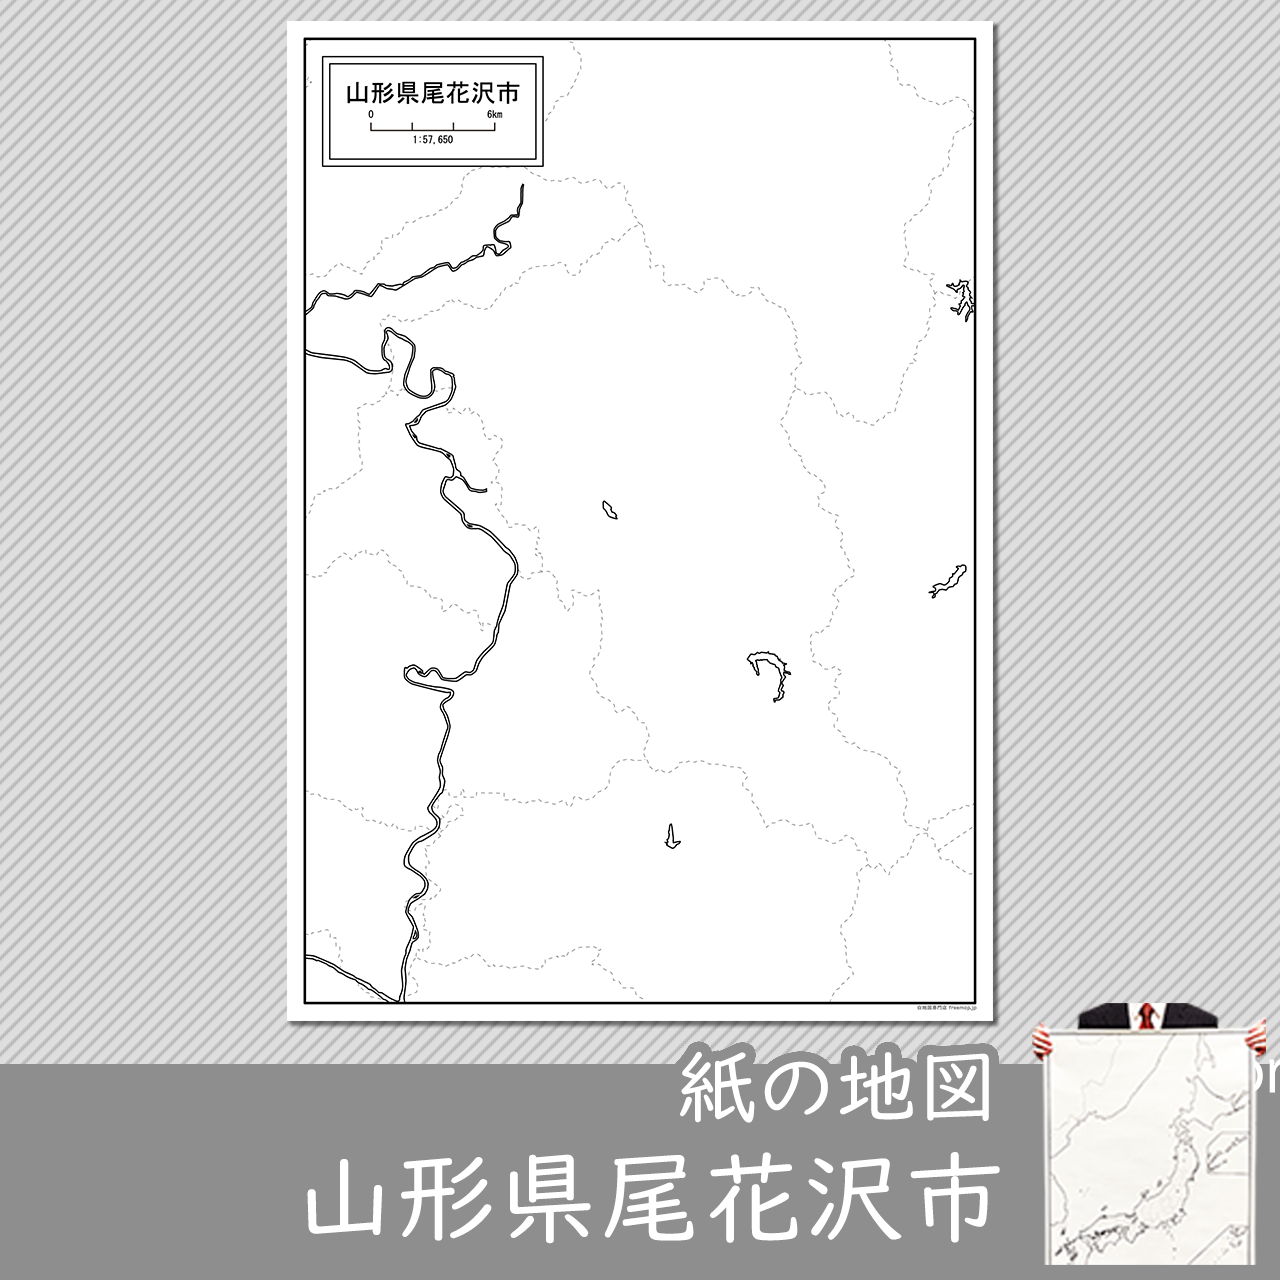 尾花沢市の紙の白地図